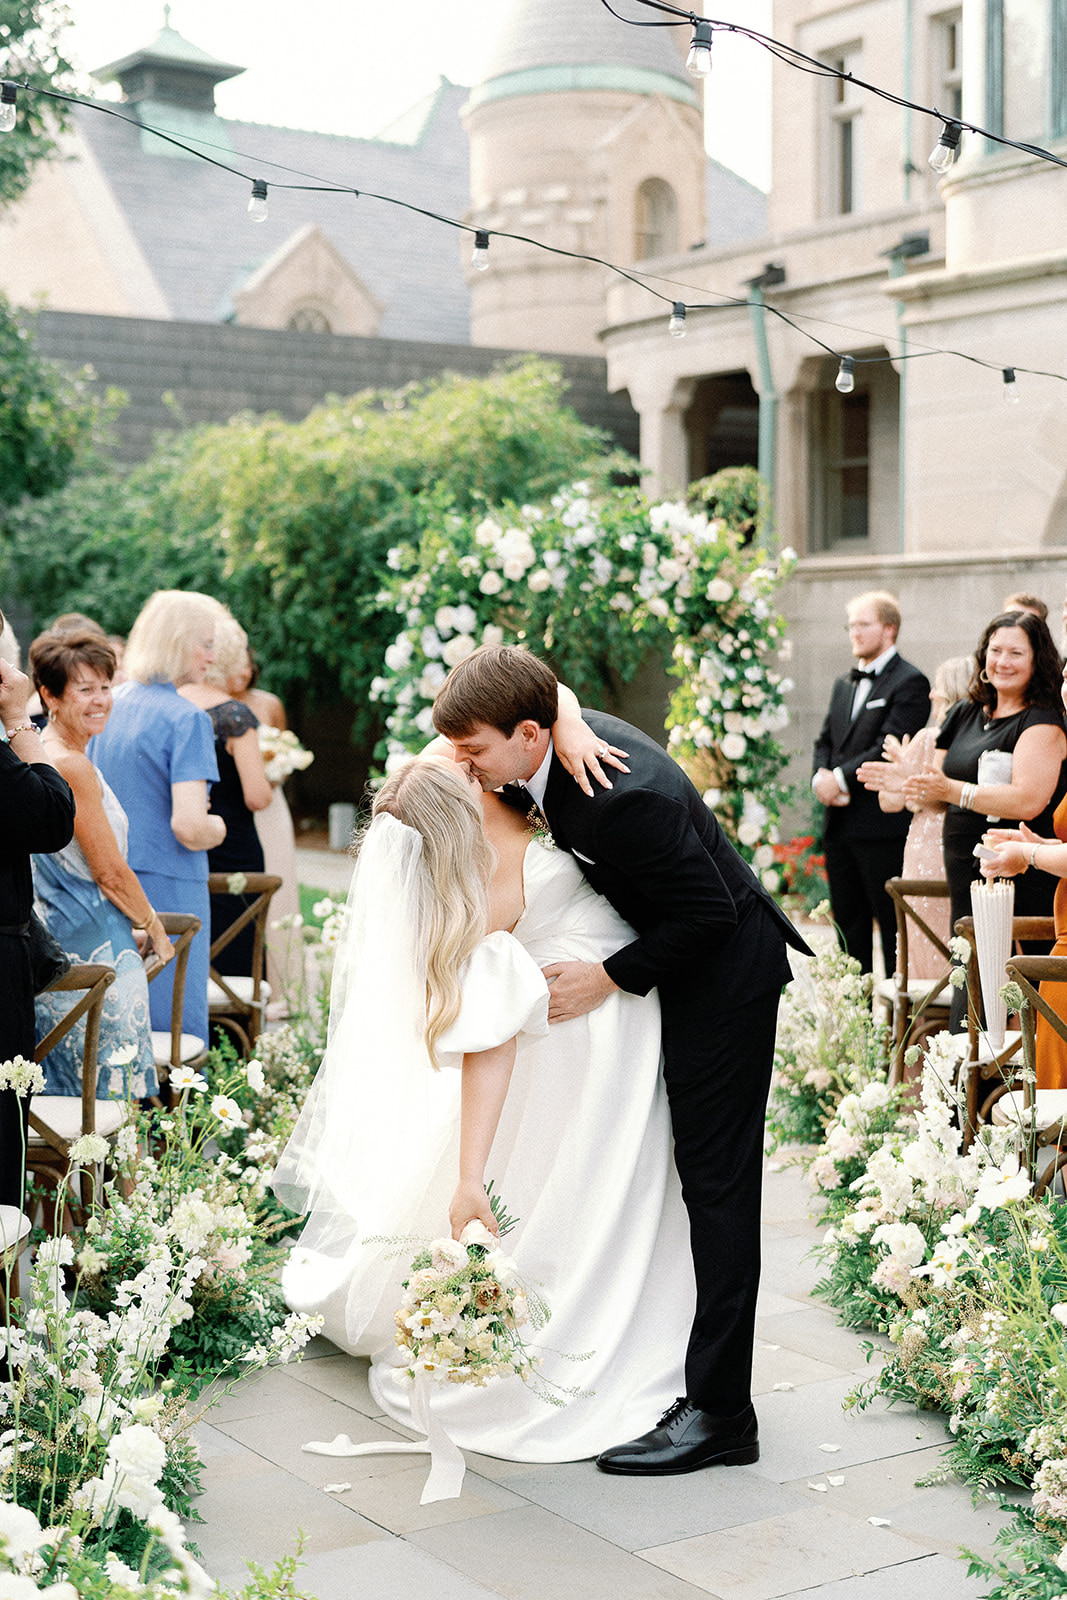 American Swedish Institute Wedding florals by Ashley Fox Designs 